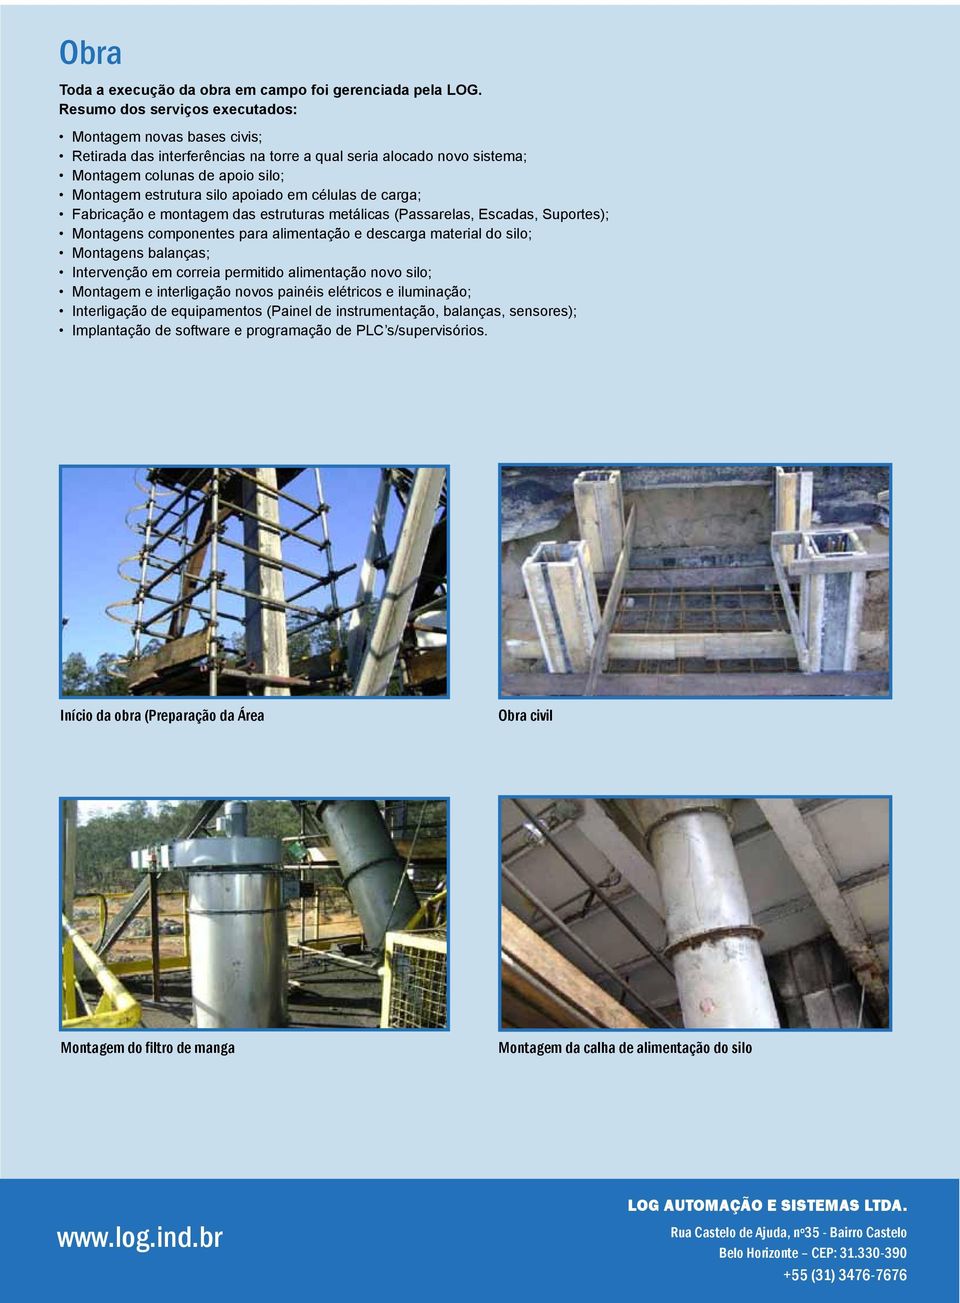 células de carga; Fabricação e montagem das estruturas metálicas (Passarelas, Escadas, Suportes); Montagens componentes para alimentação e descarga material do silo; Montagens balanças; Intervenção